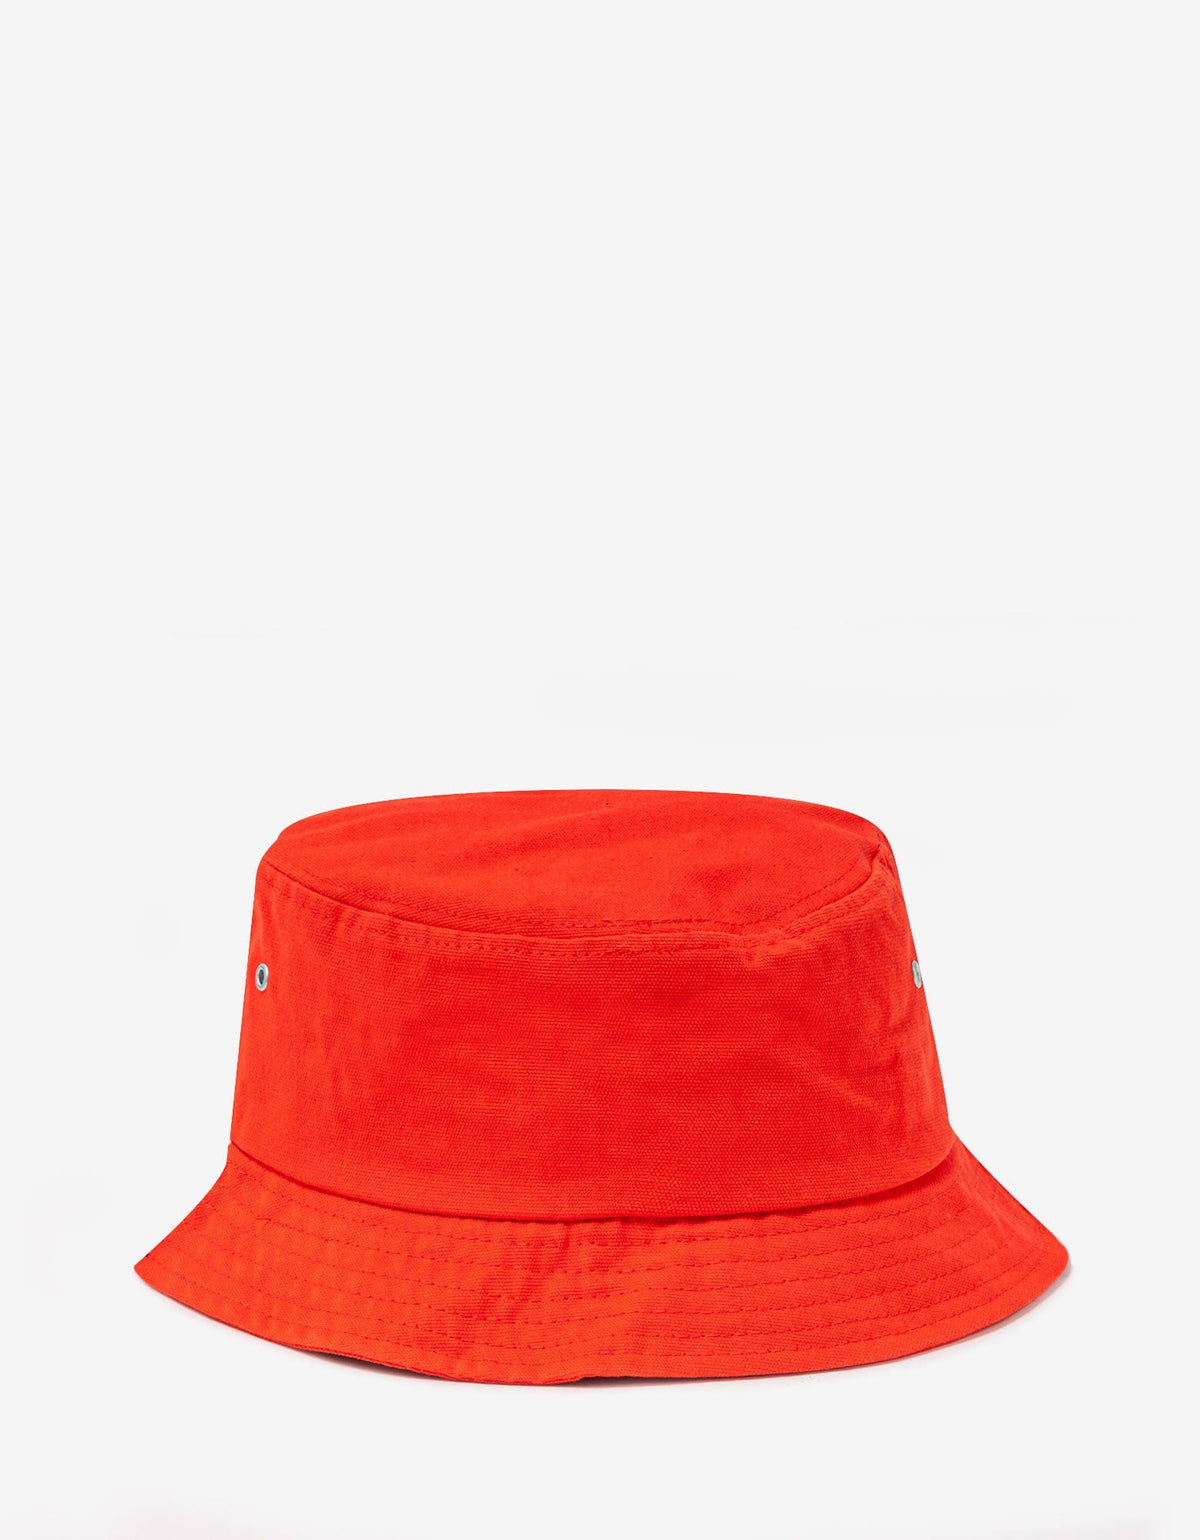 Kenzo Red 'Boke Flower' Crest Bucket Hat